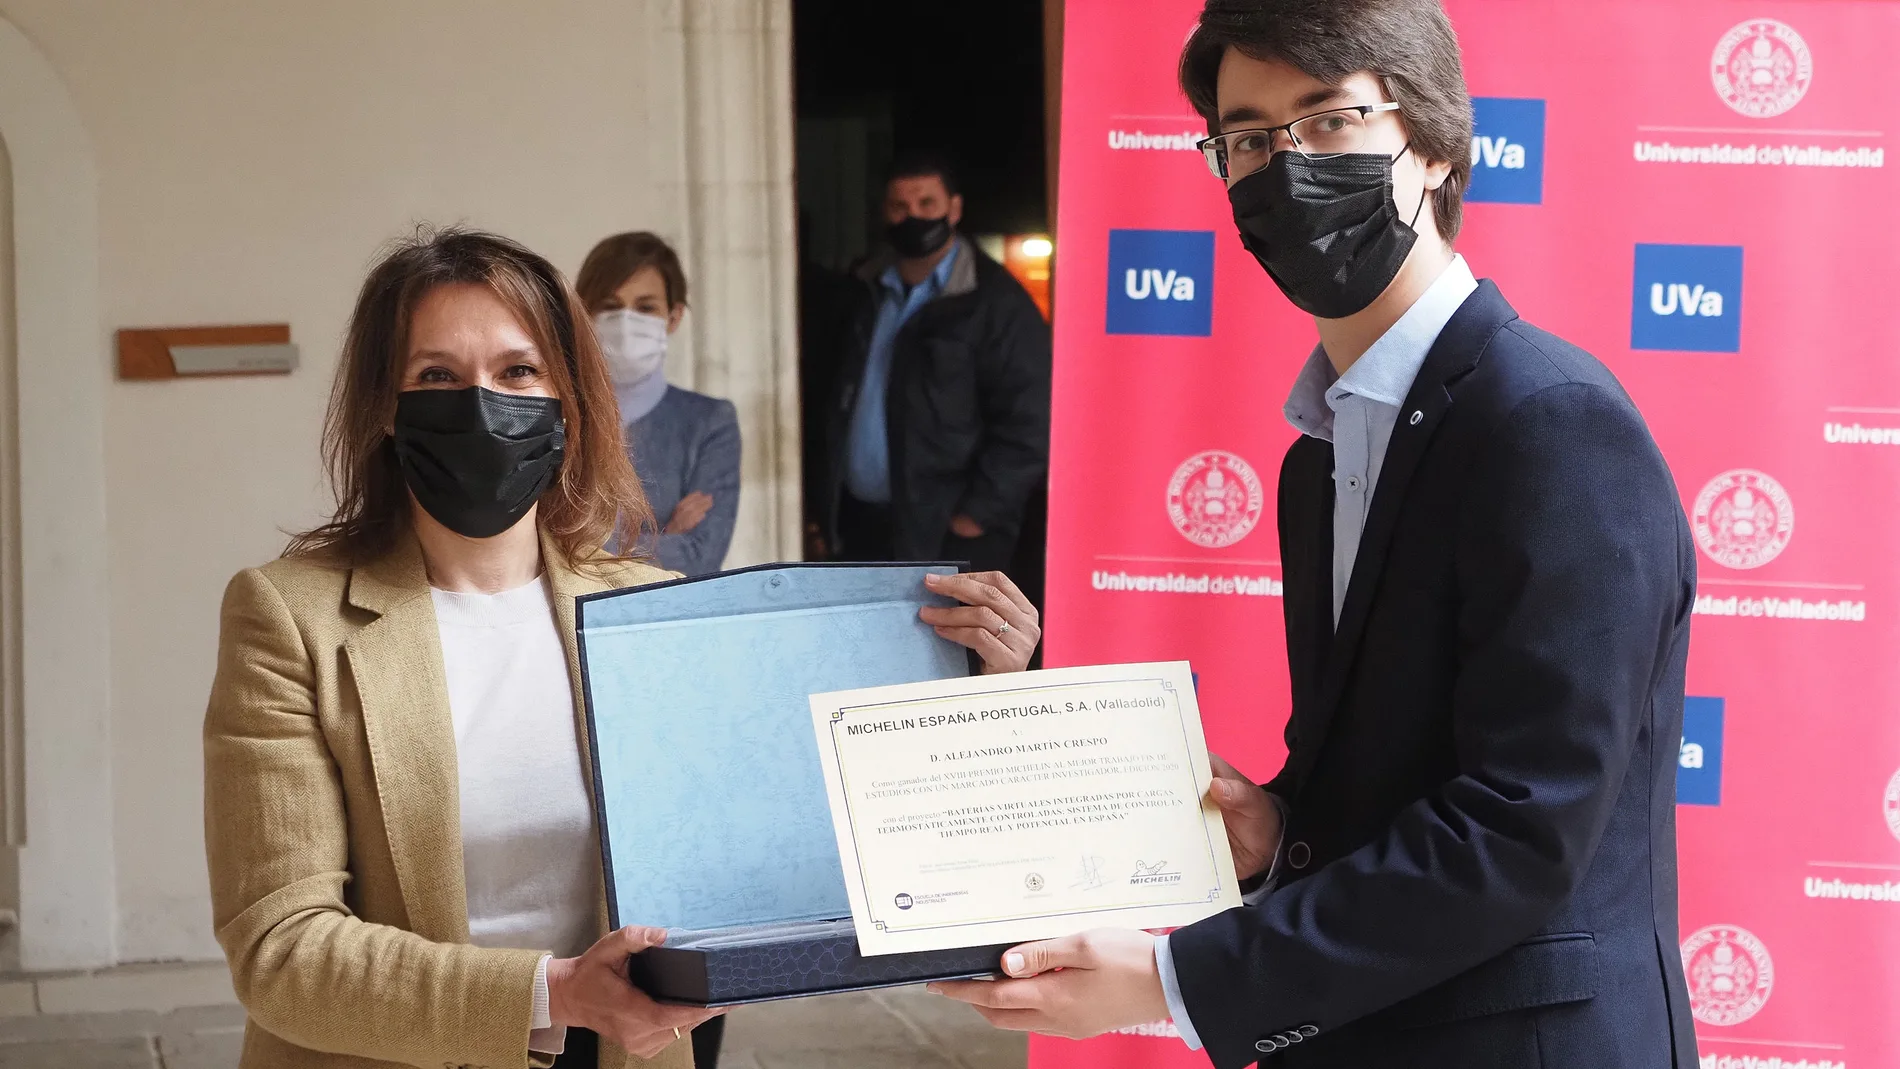 La consejera de Educación, Rocío Lucas, galardona a un estudiante de la Universidad de Valladolid